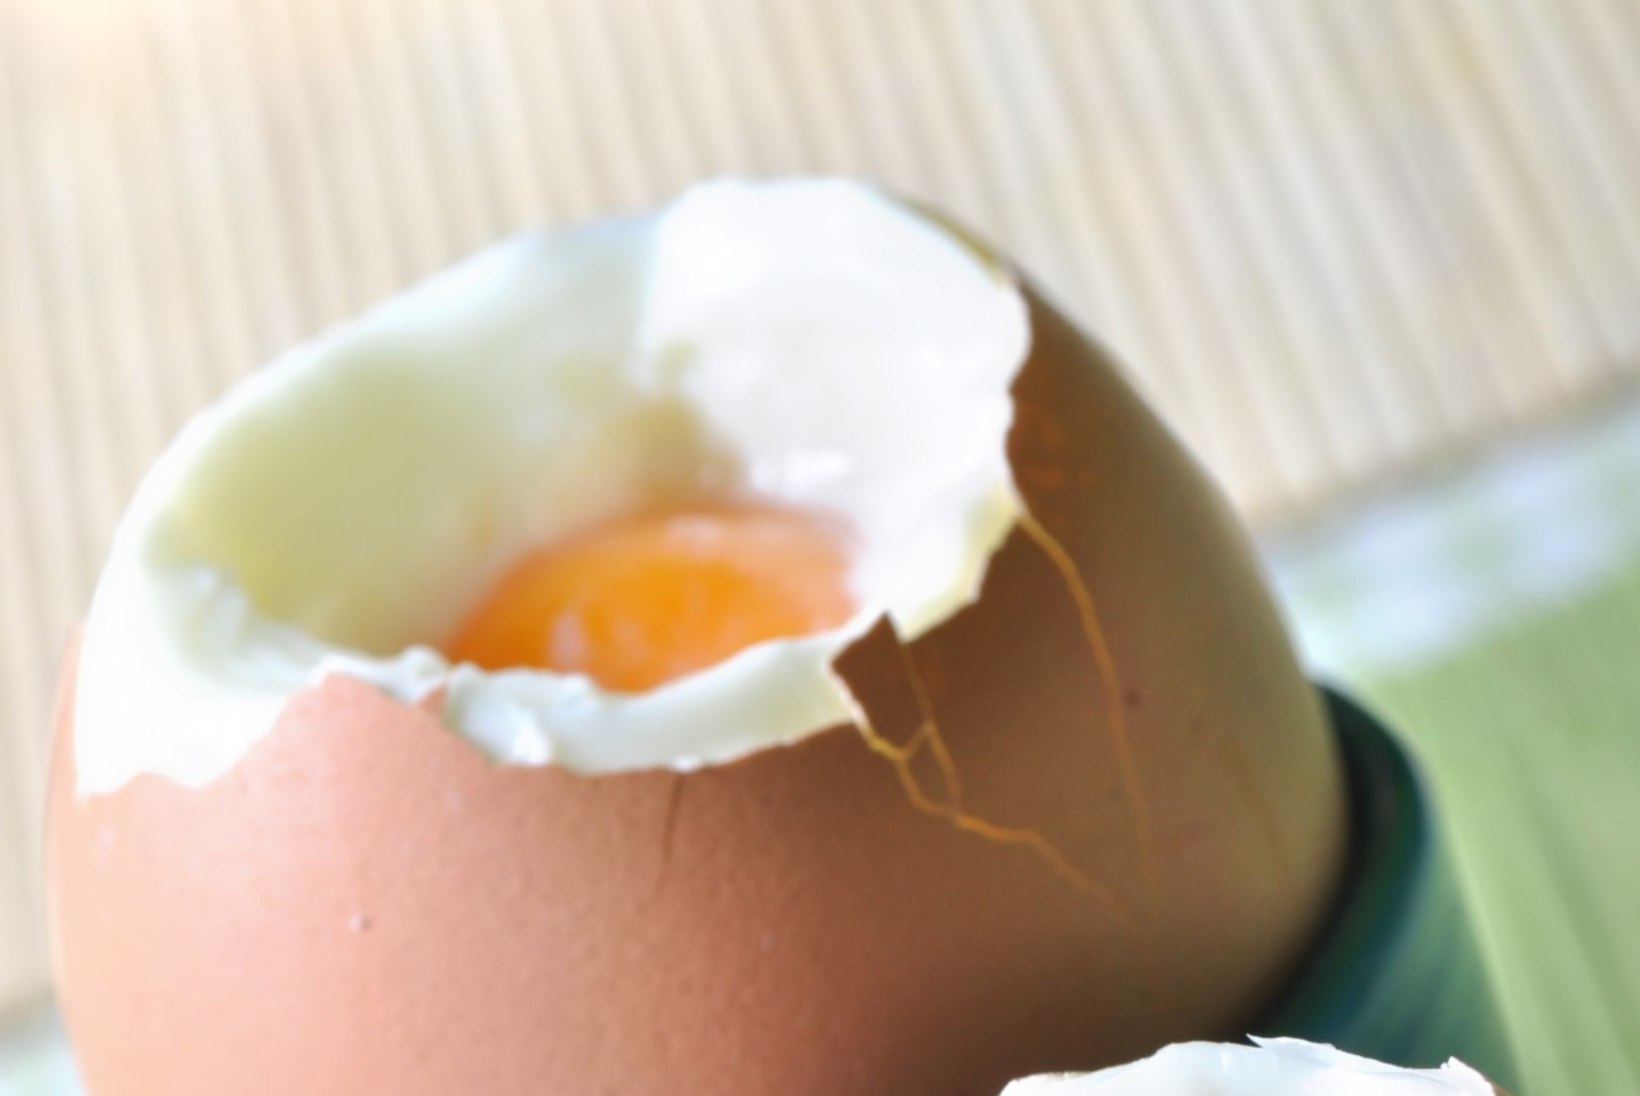 Miks peaks oma tervise nimel iga päev kaks muna sööma?